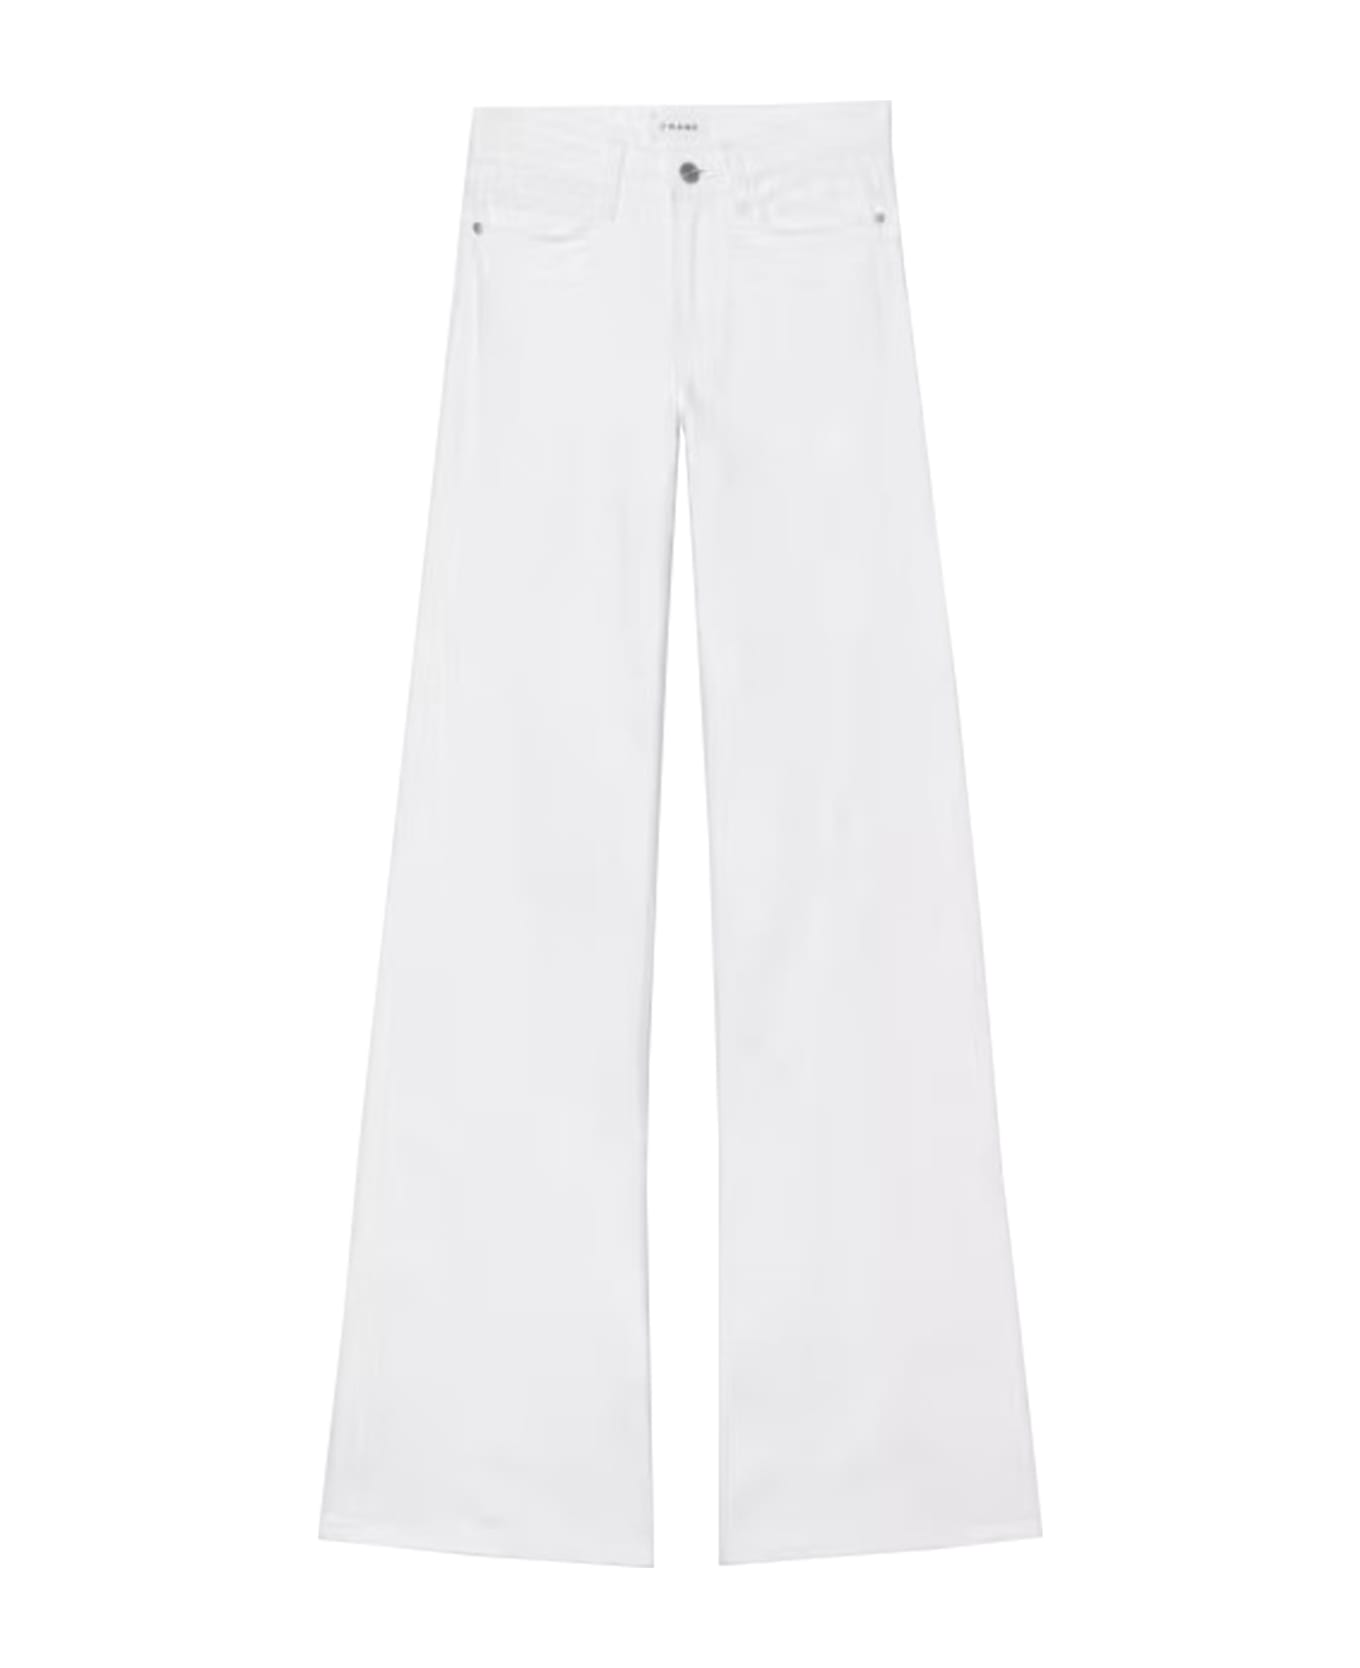 Frame Jeans - White デニム